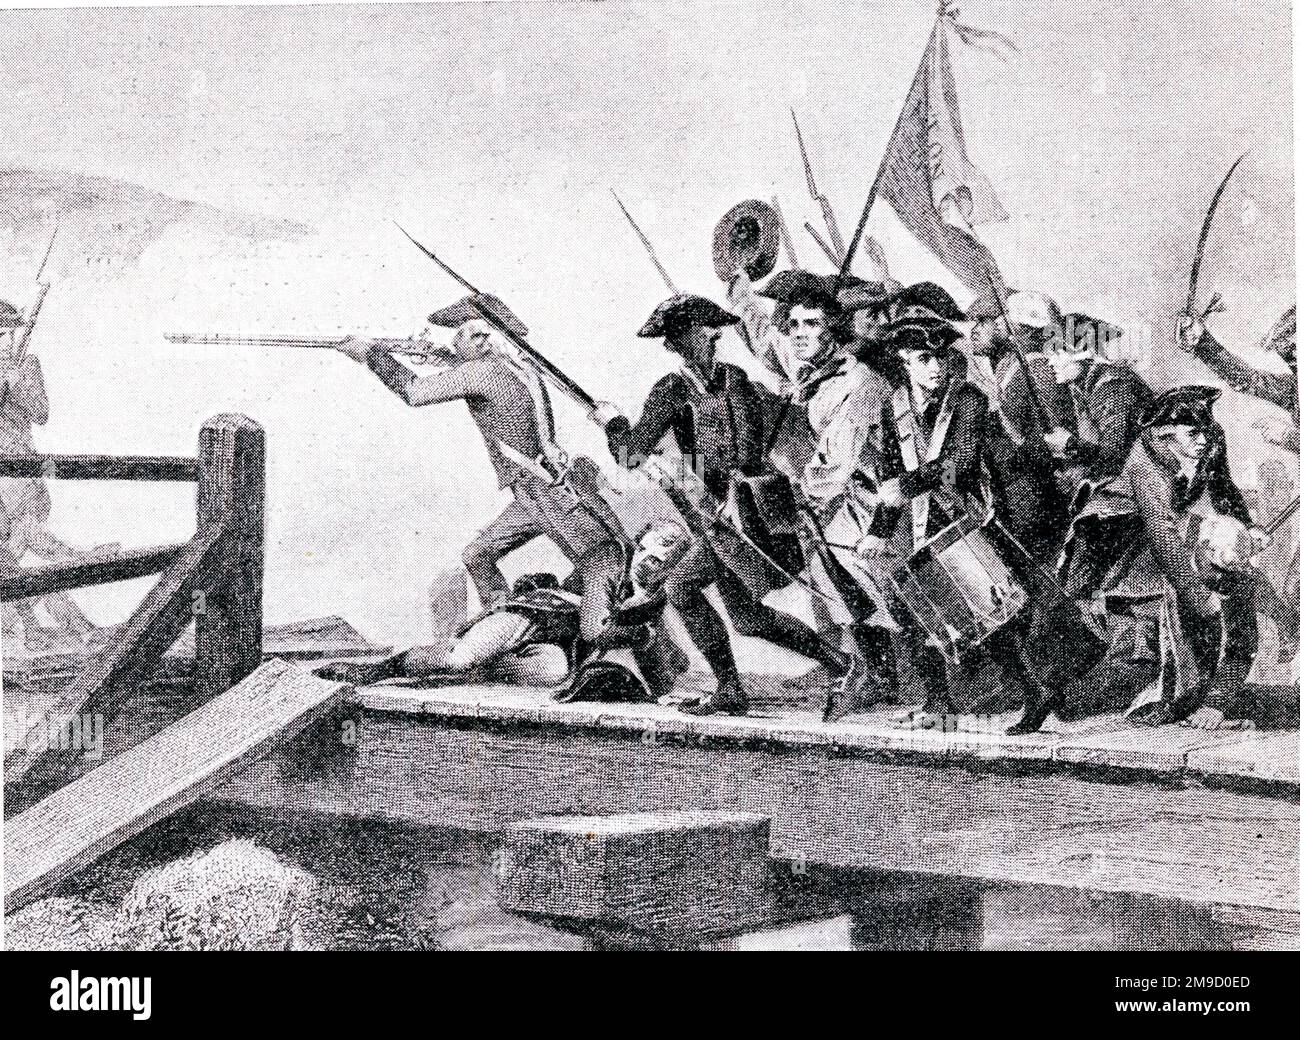 Lutte historique sur le pont Concord, États-Unis - 19 avril 1775 Banque D'Images